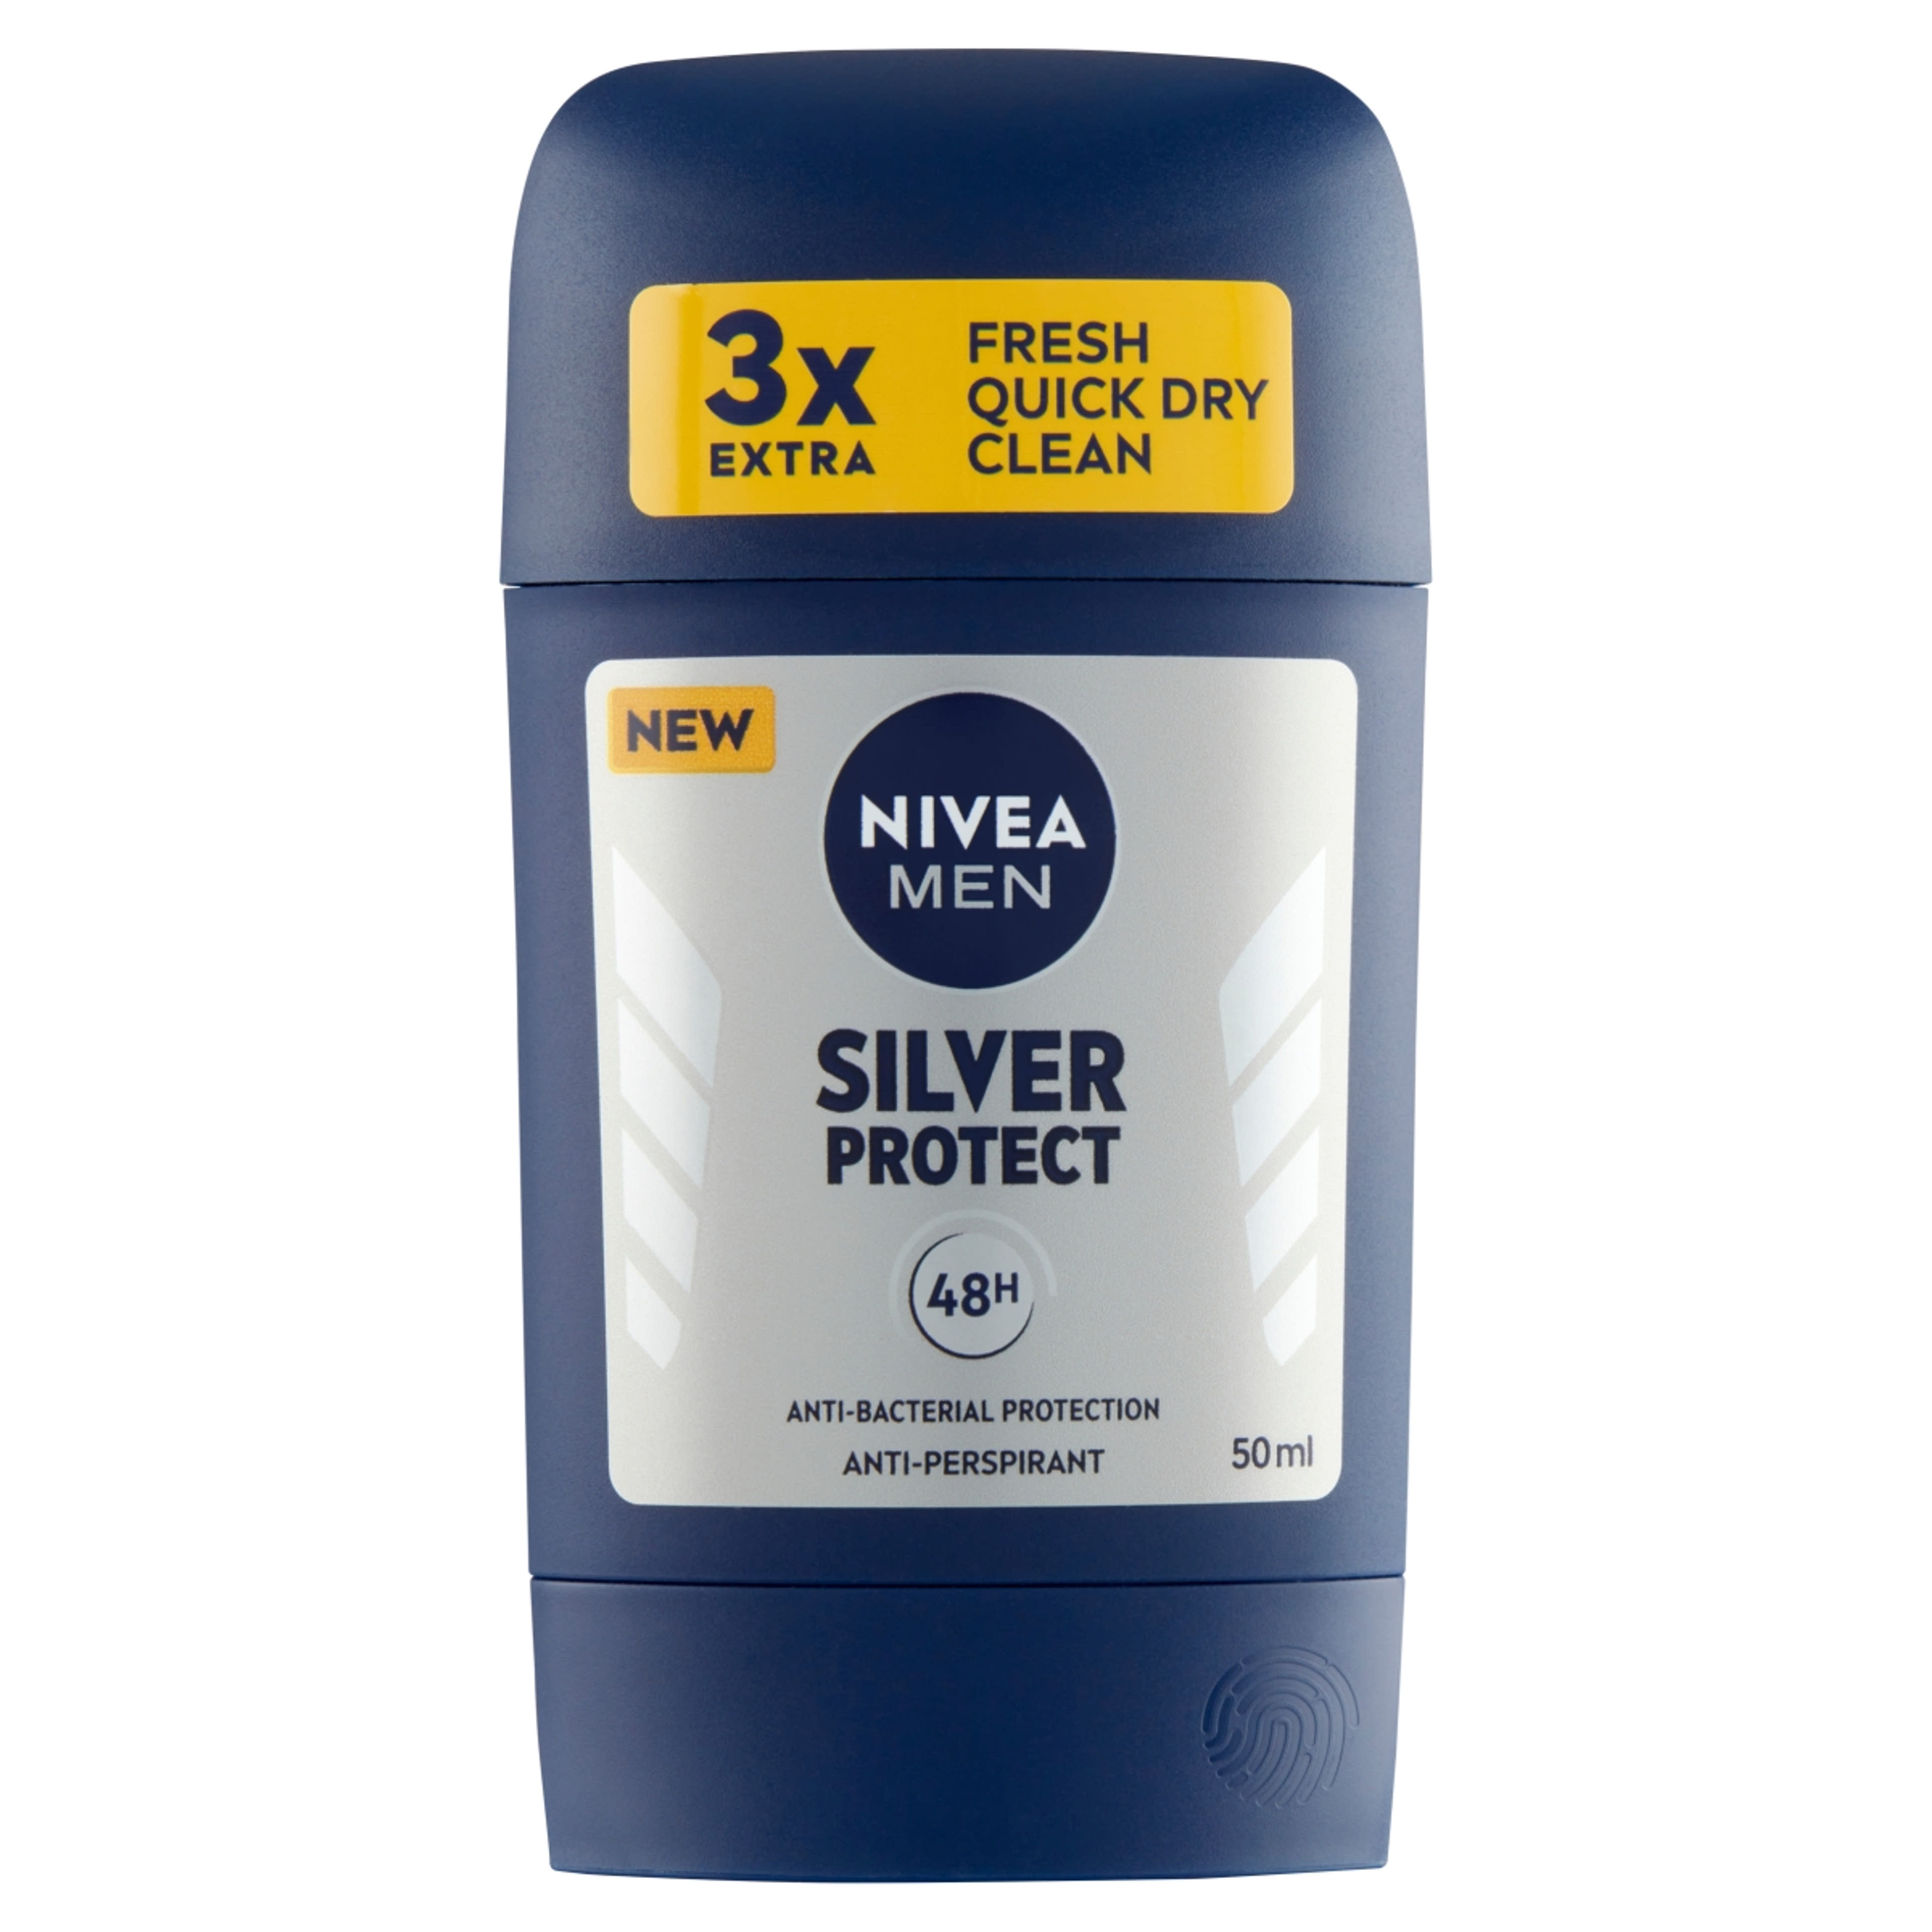 Nivea Men Silver Protect deo stift - 50 ml-1